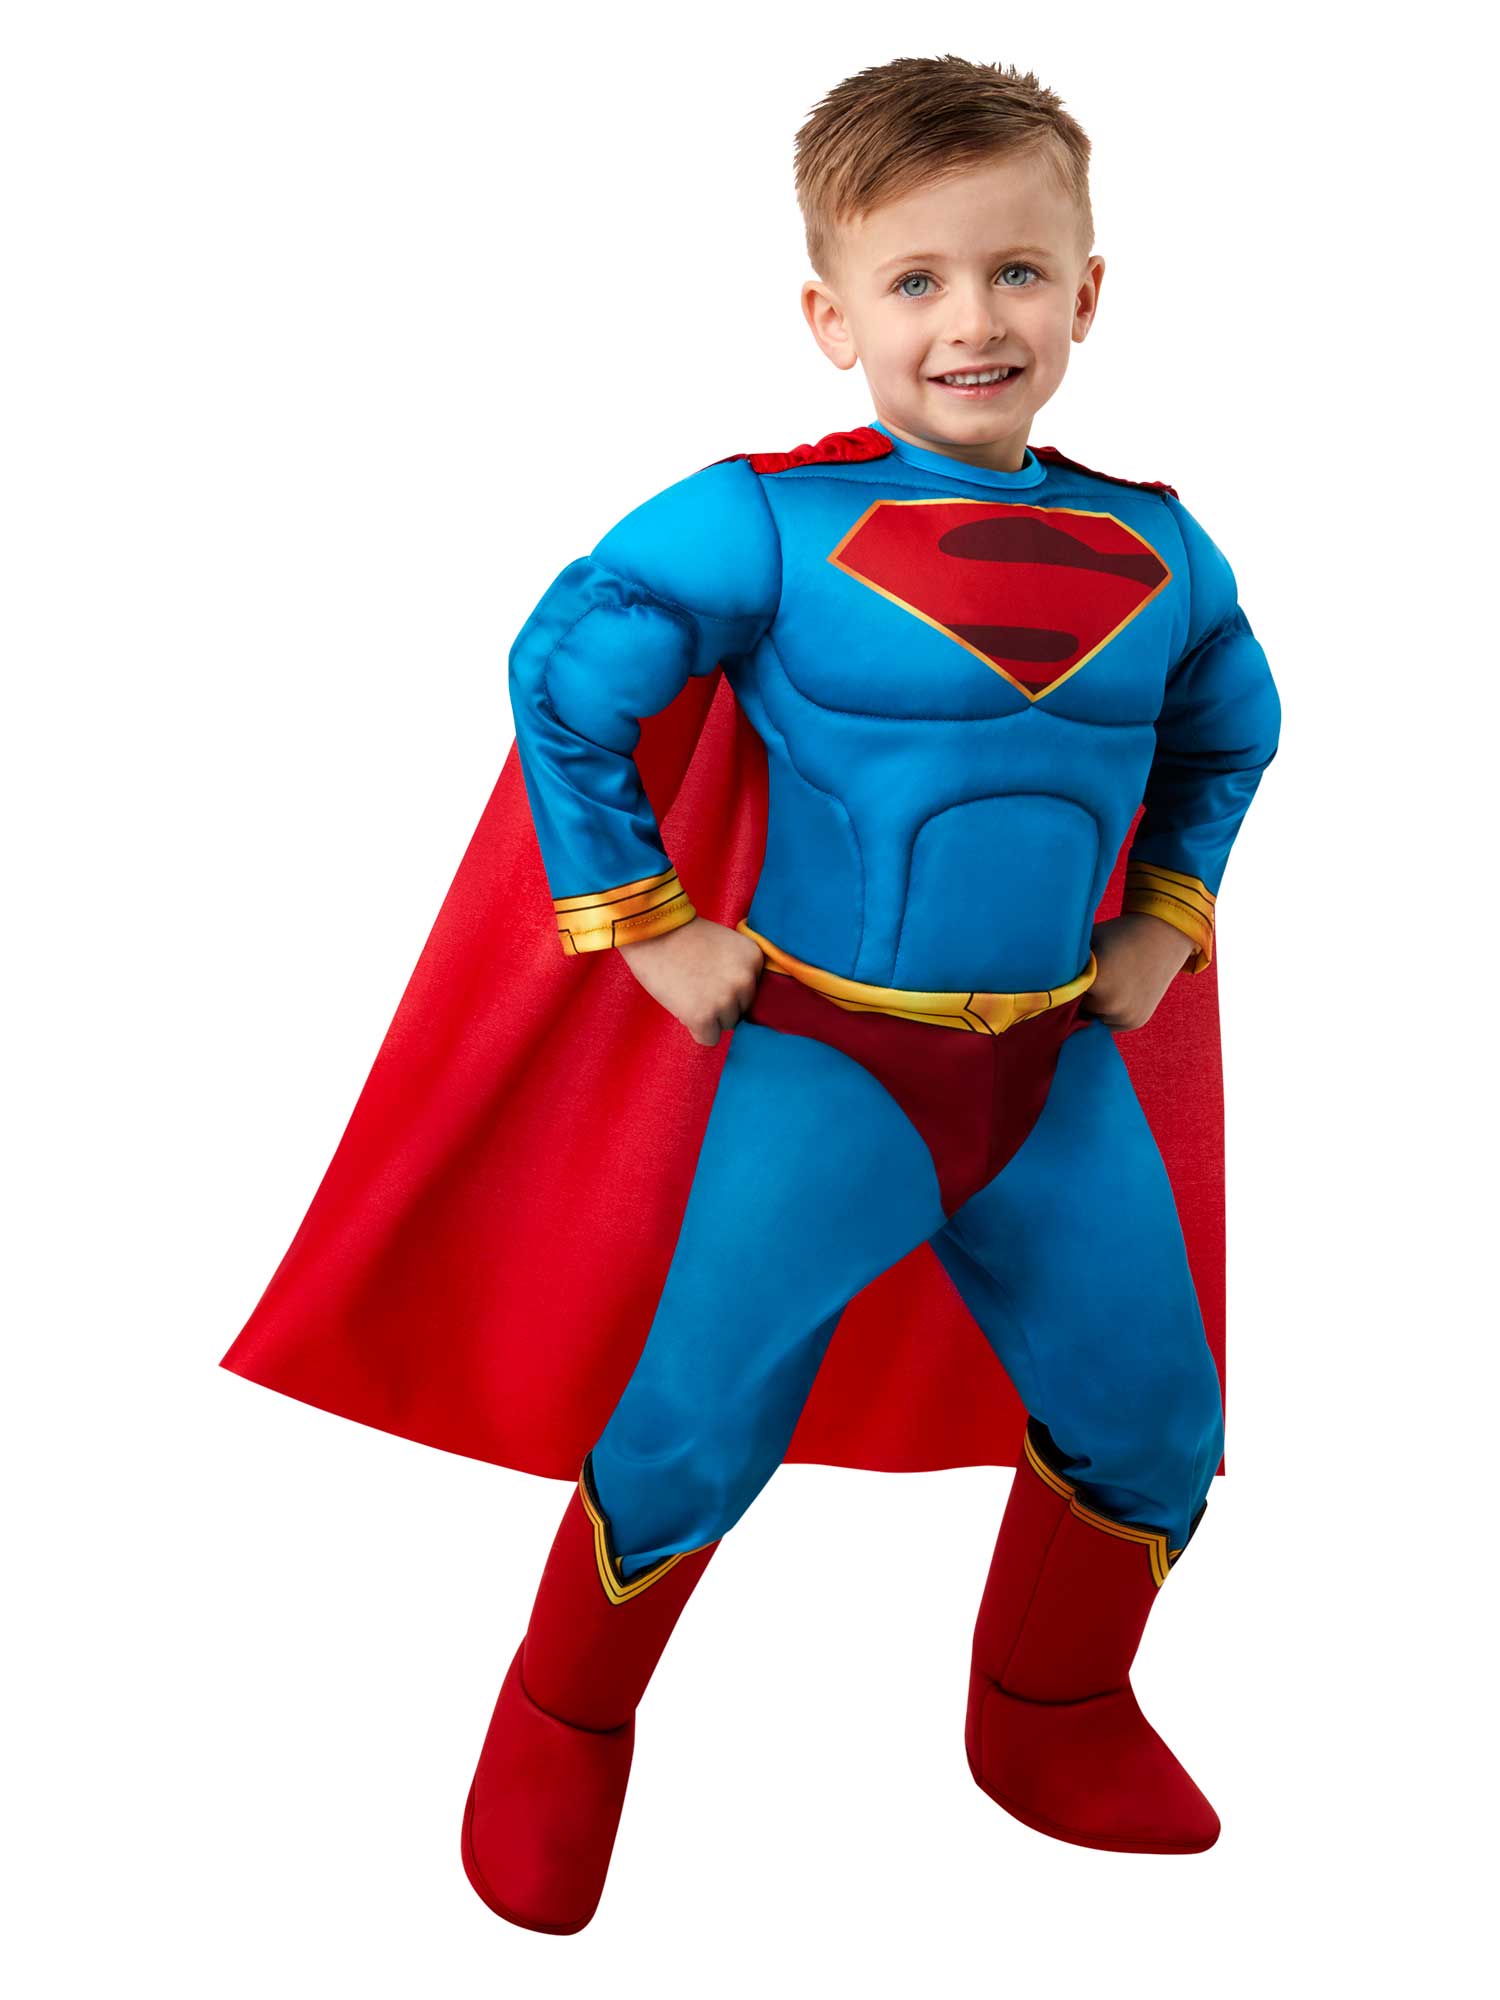 Superman, DC League of Super-Pets, DC League of Super-Pets, Blue, DC, Kids Costumes, 2T years, Front